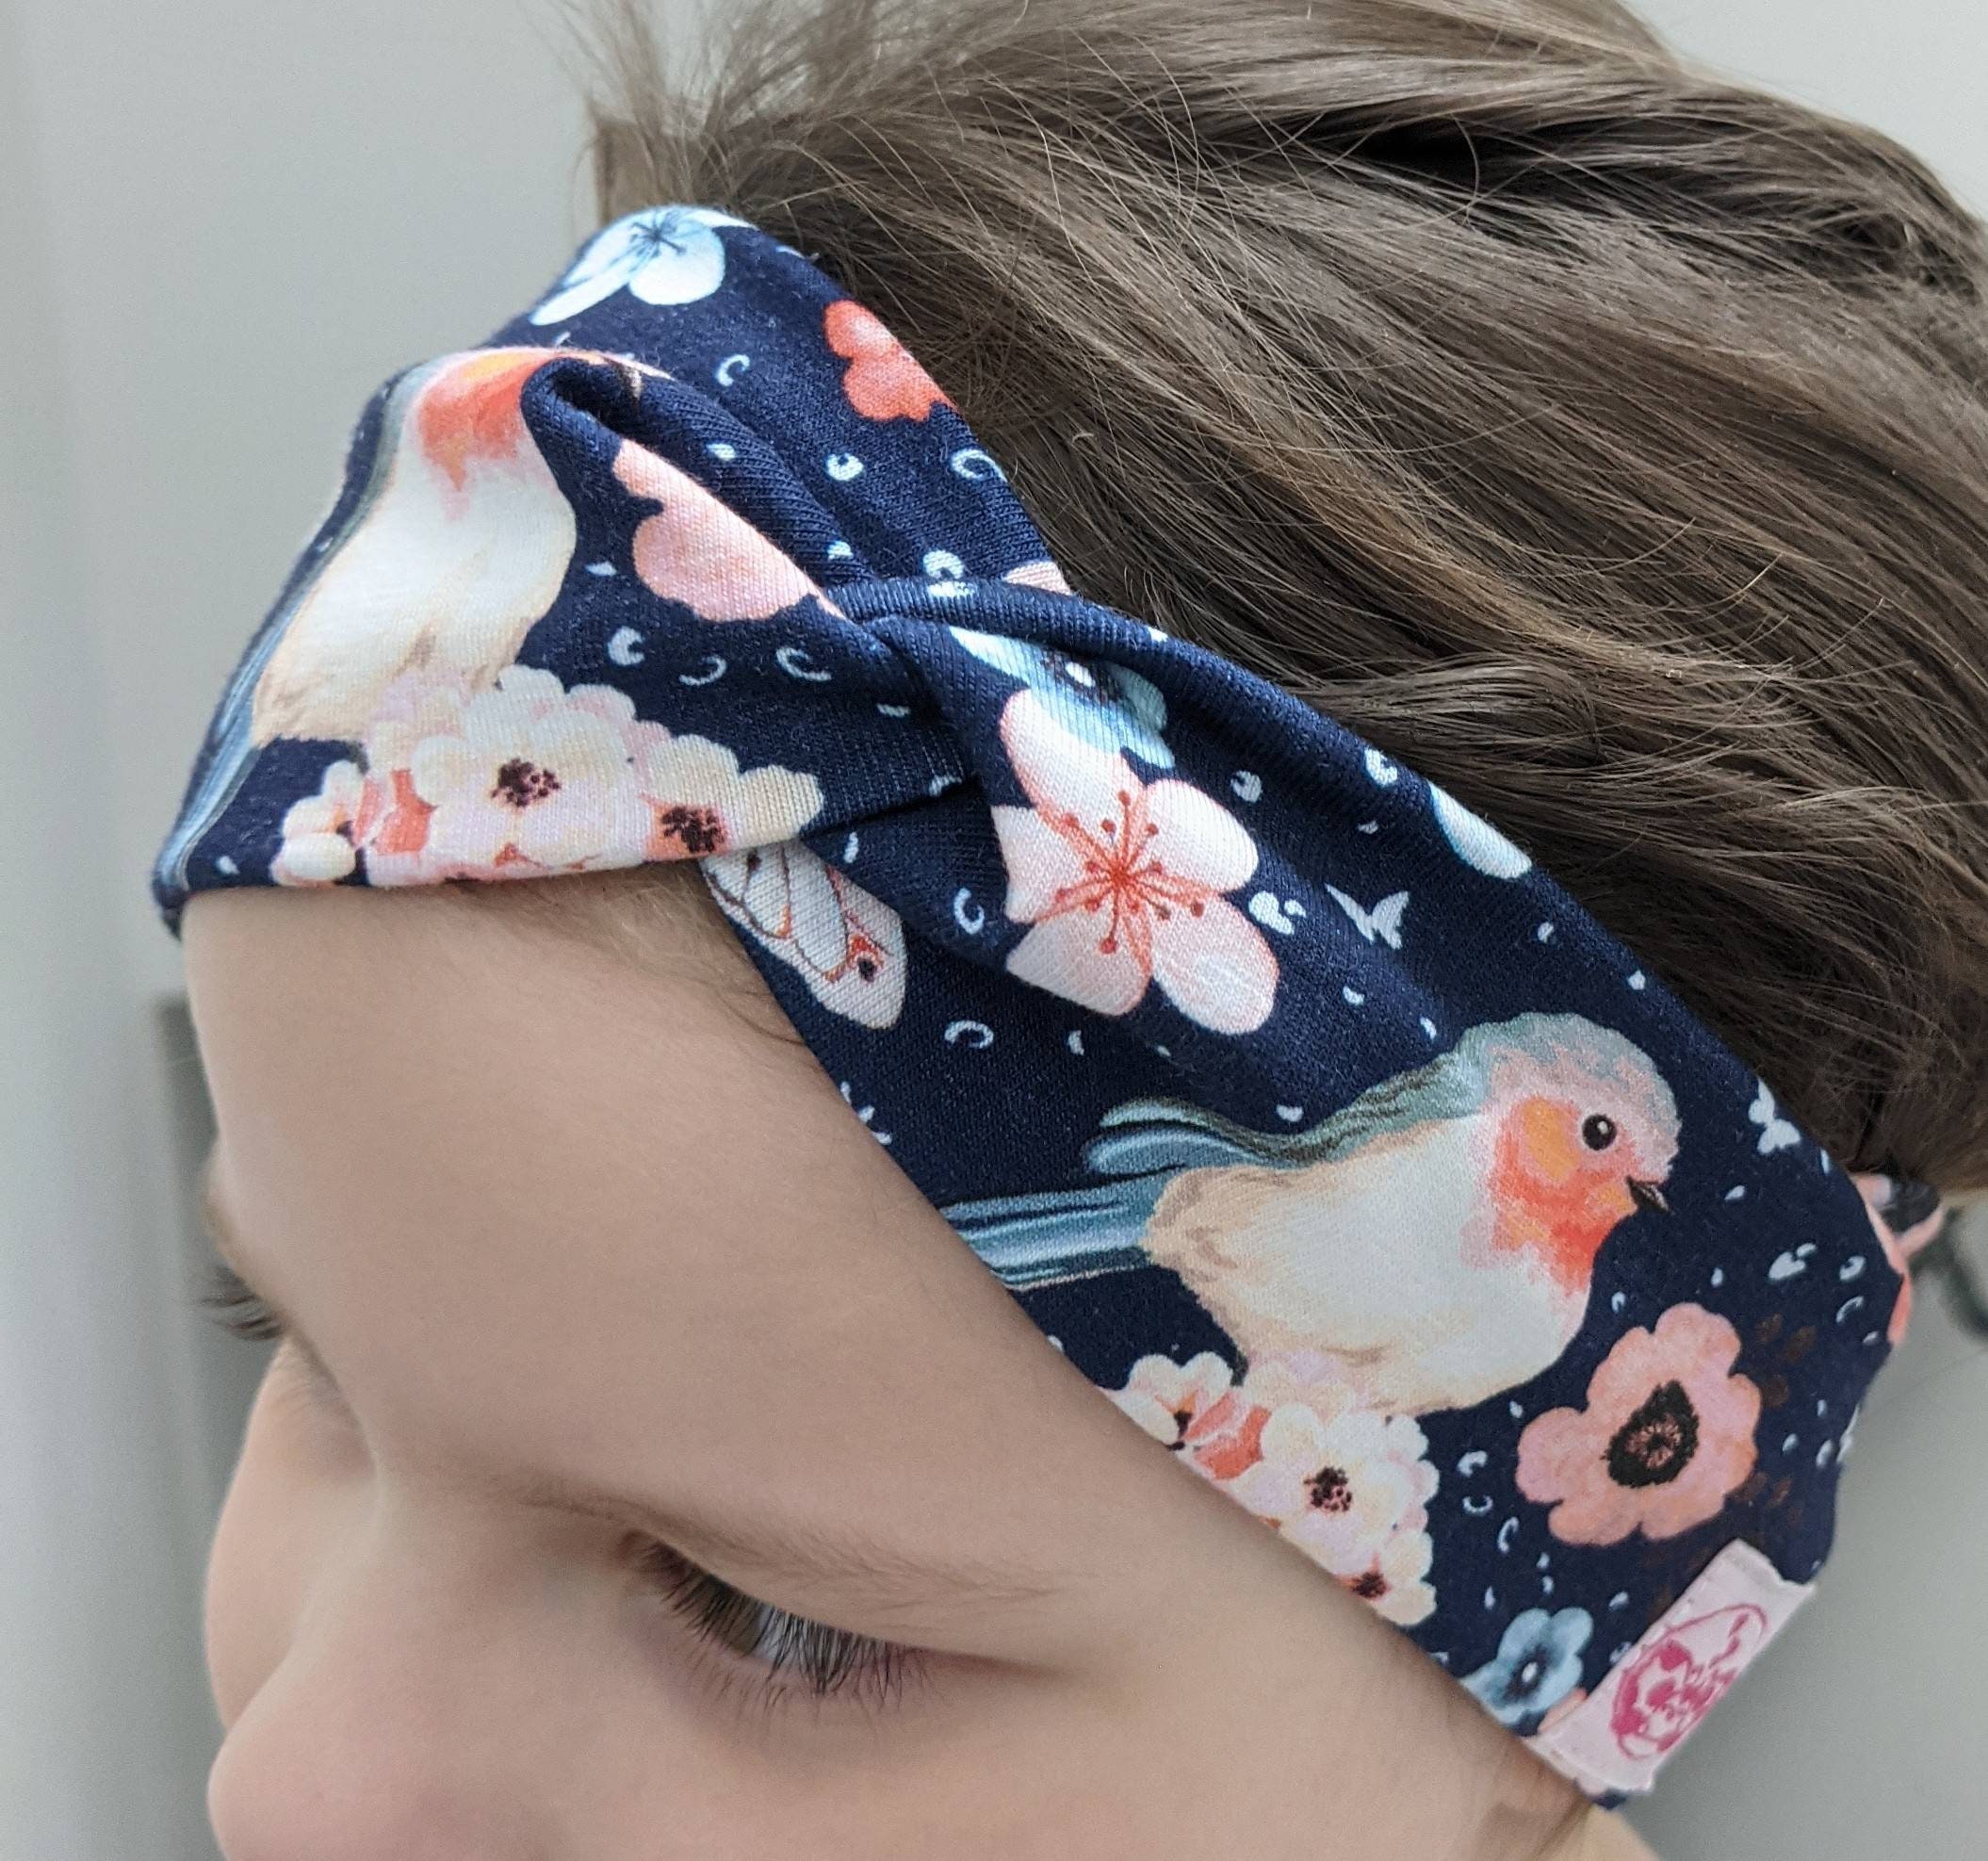 Xiton 10 PC-Baby-Stirnband-Haarband Bowknot Blumen-Kind-Haar-Zusätze Kopfbedeckung für Neugeborene Kind-Kleinkind-Fotografie 